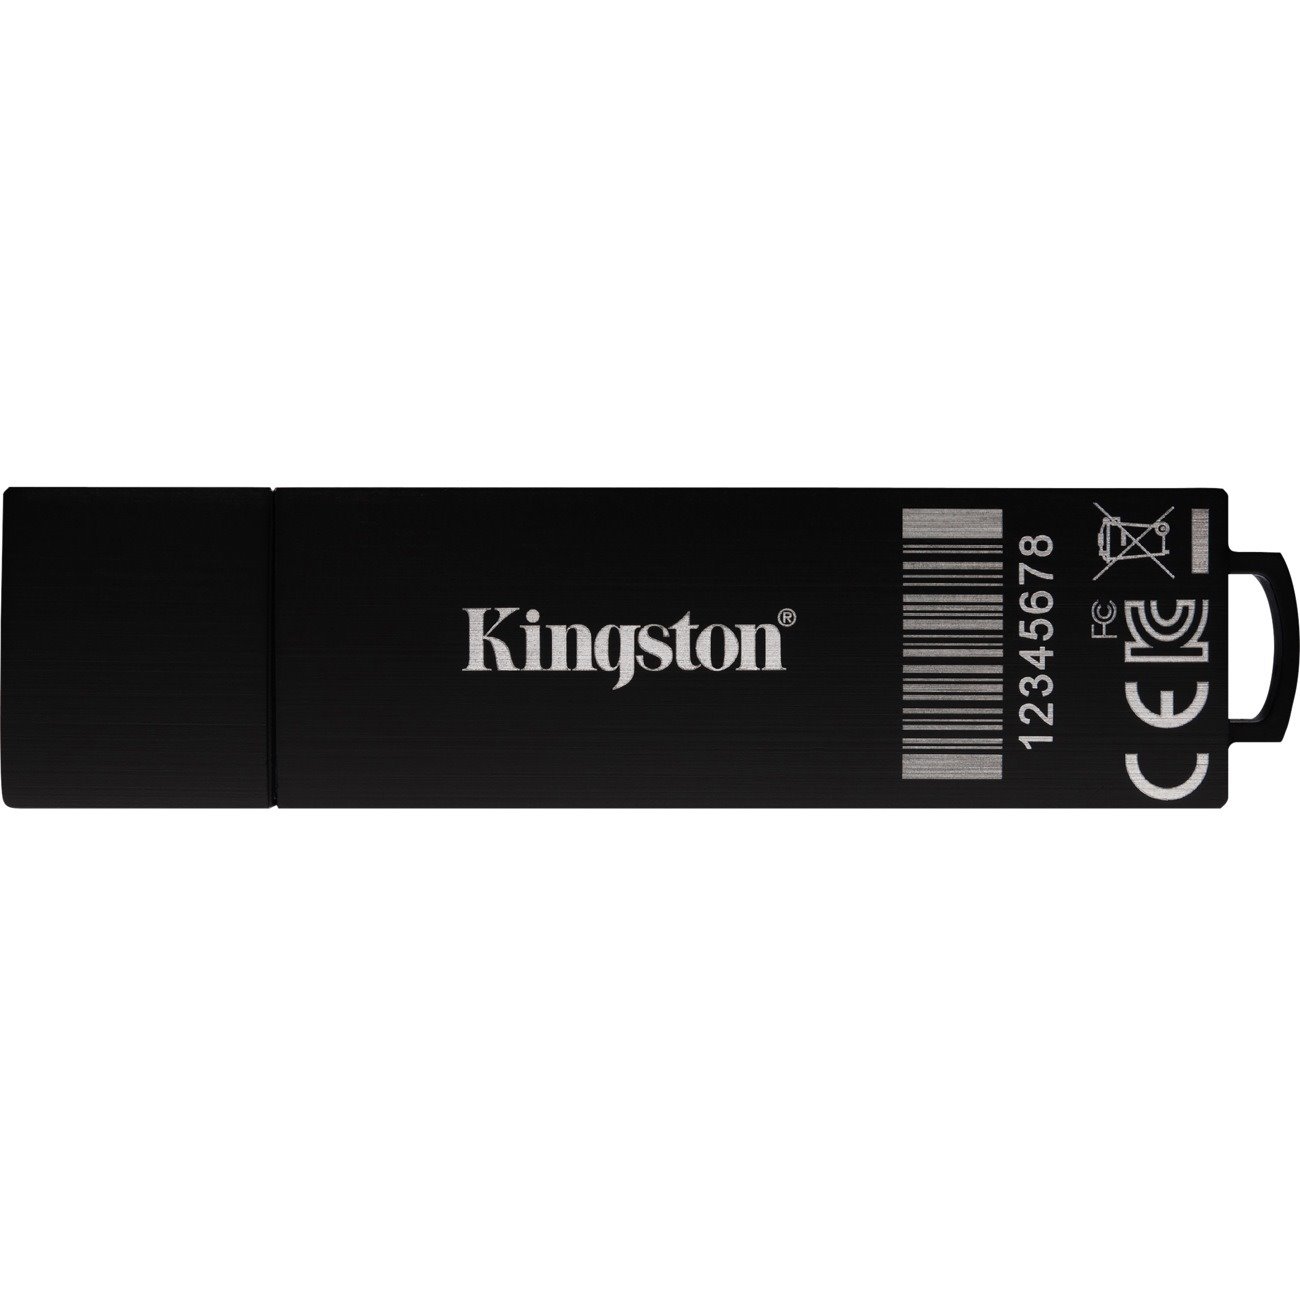 IronKey 32GB D300SM USB 3.1 Flash Drive